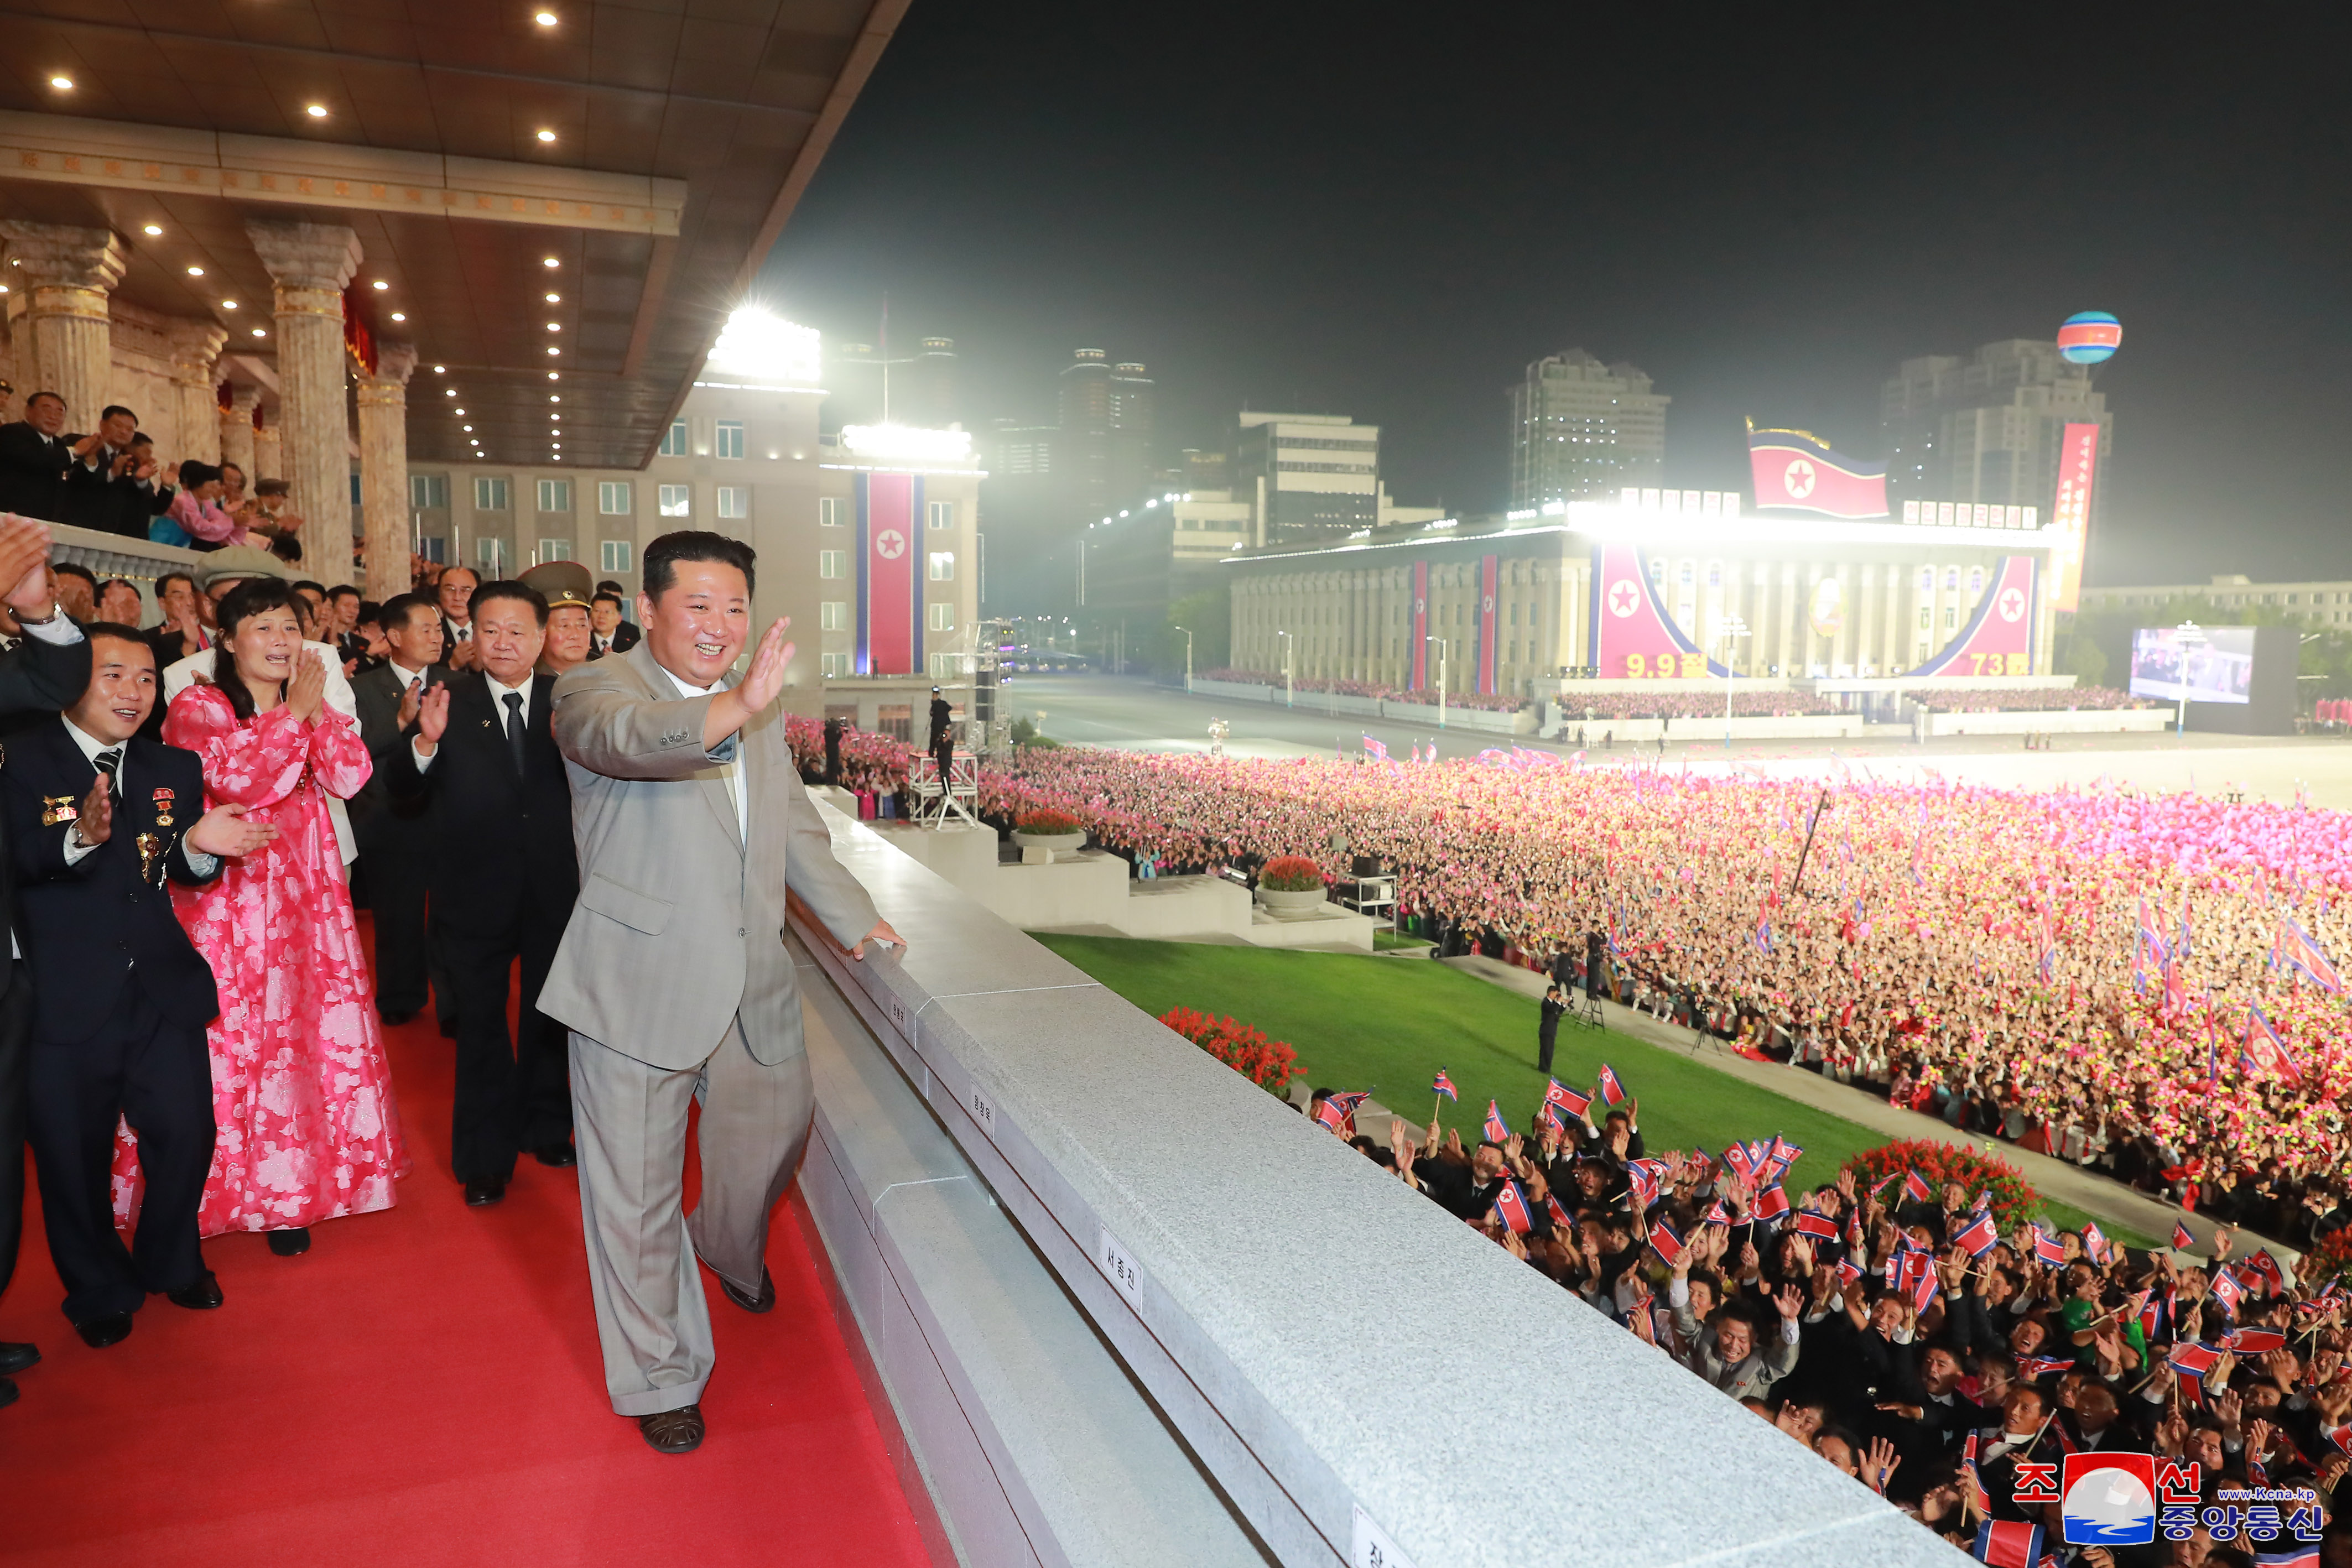 【图集】朝鲜夜间阅兵庆国庆 侧重增强内部凝聚